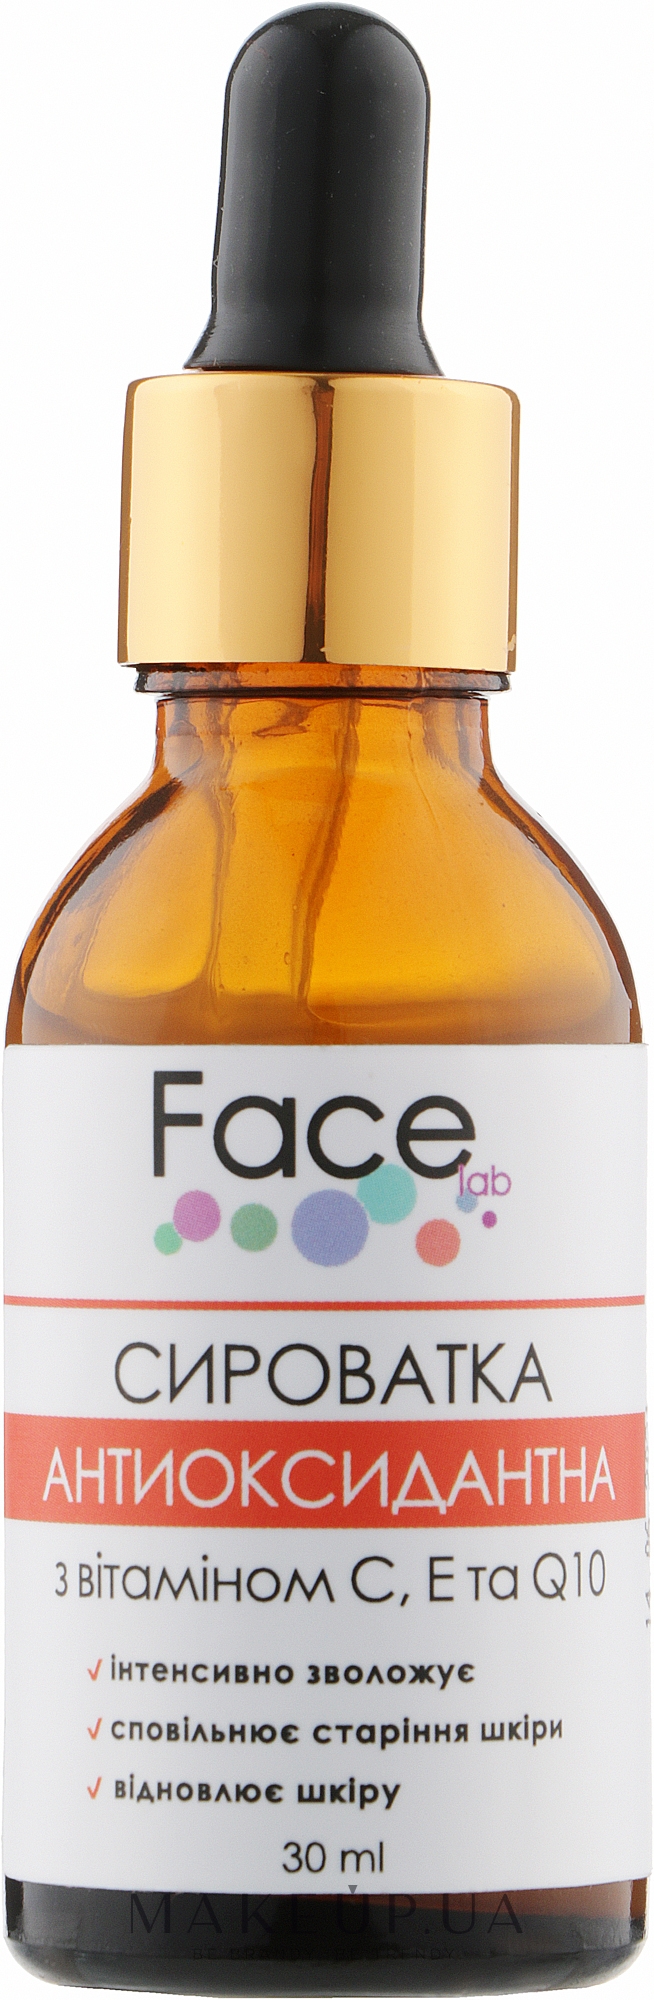 Антиоксидантна сироватка для обличчя - Face lab Antioxidant Vitamin С & Q10 Serum — фото 30ml